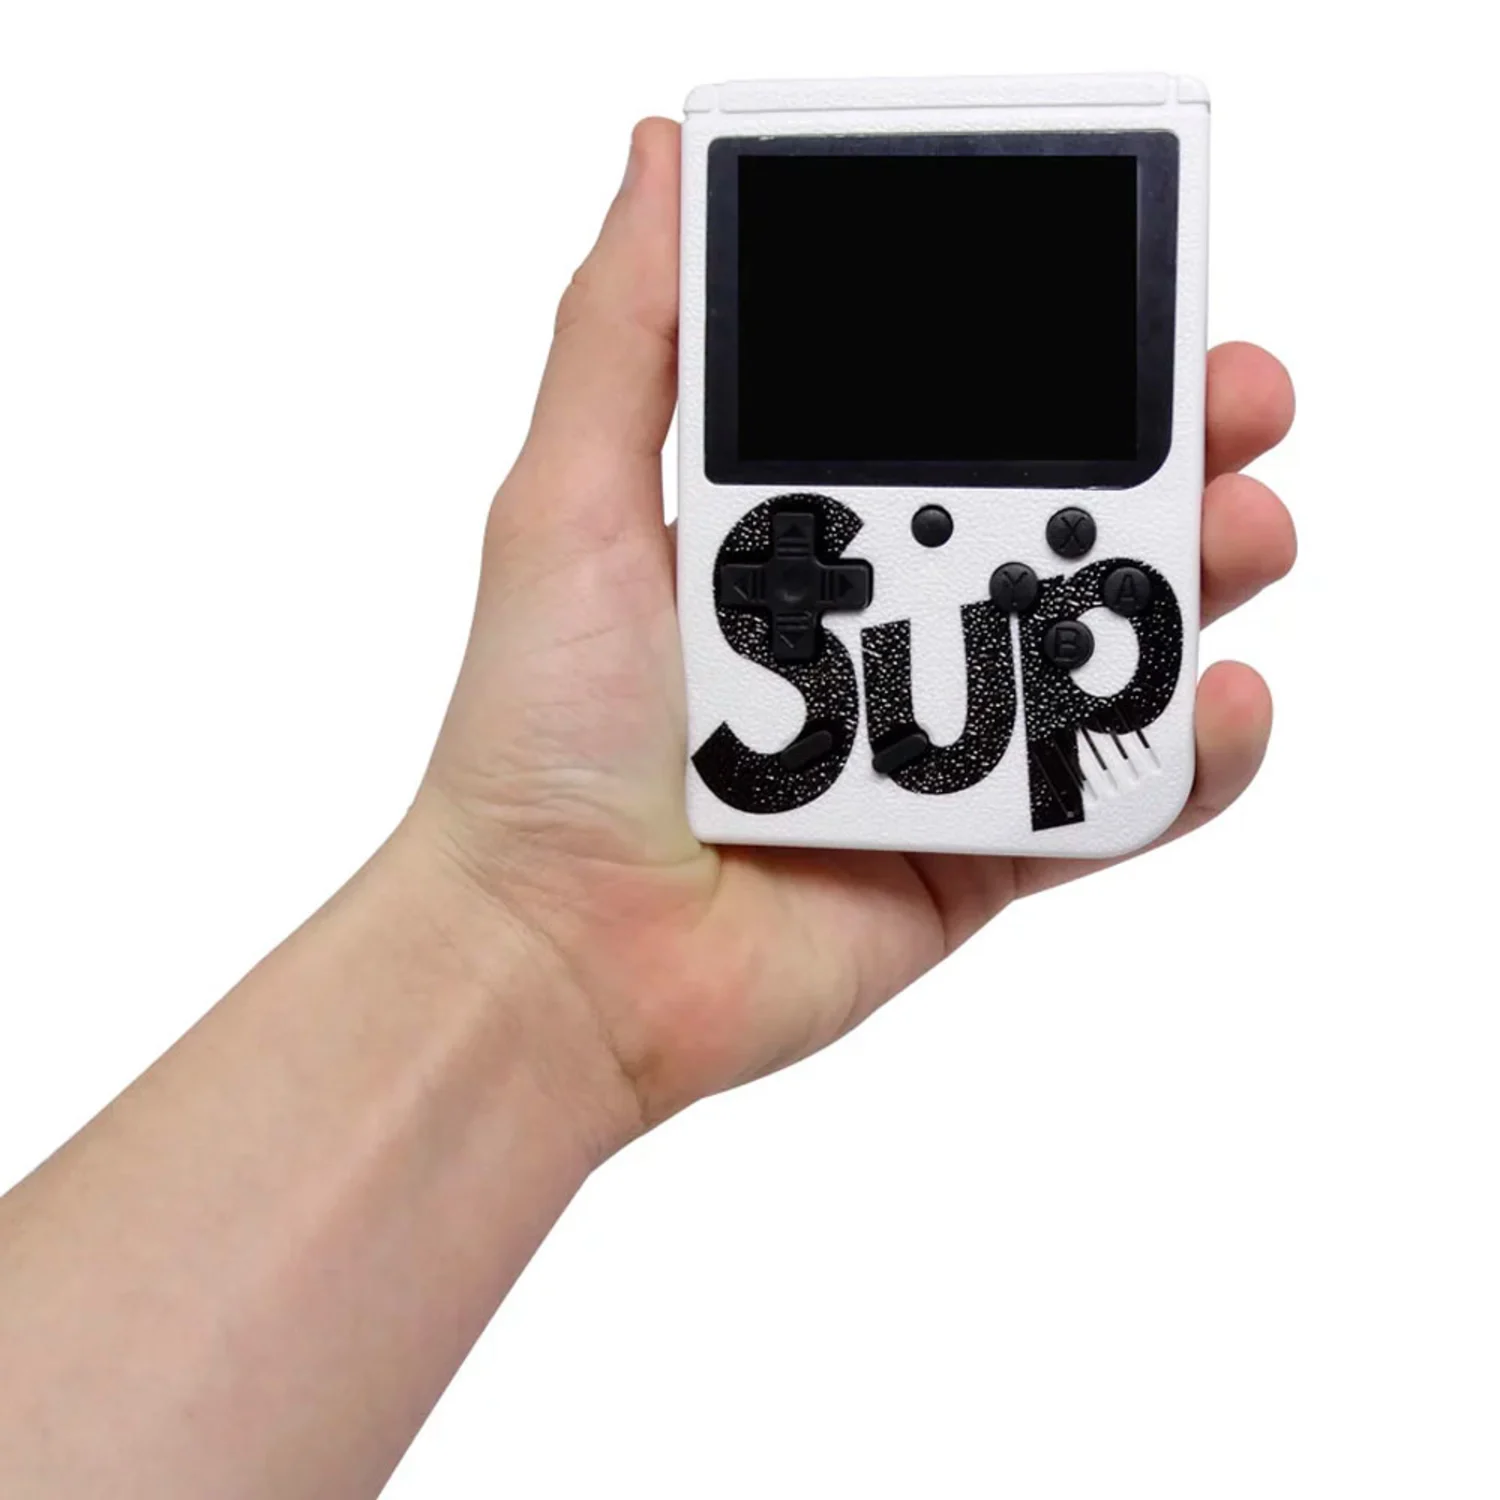 Console Game Boy Sup Game Box 400 Jogos em 1 - Branco